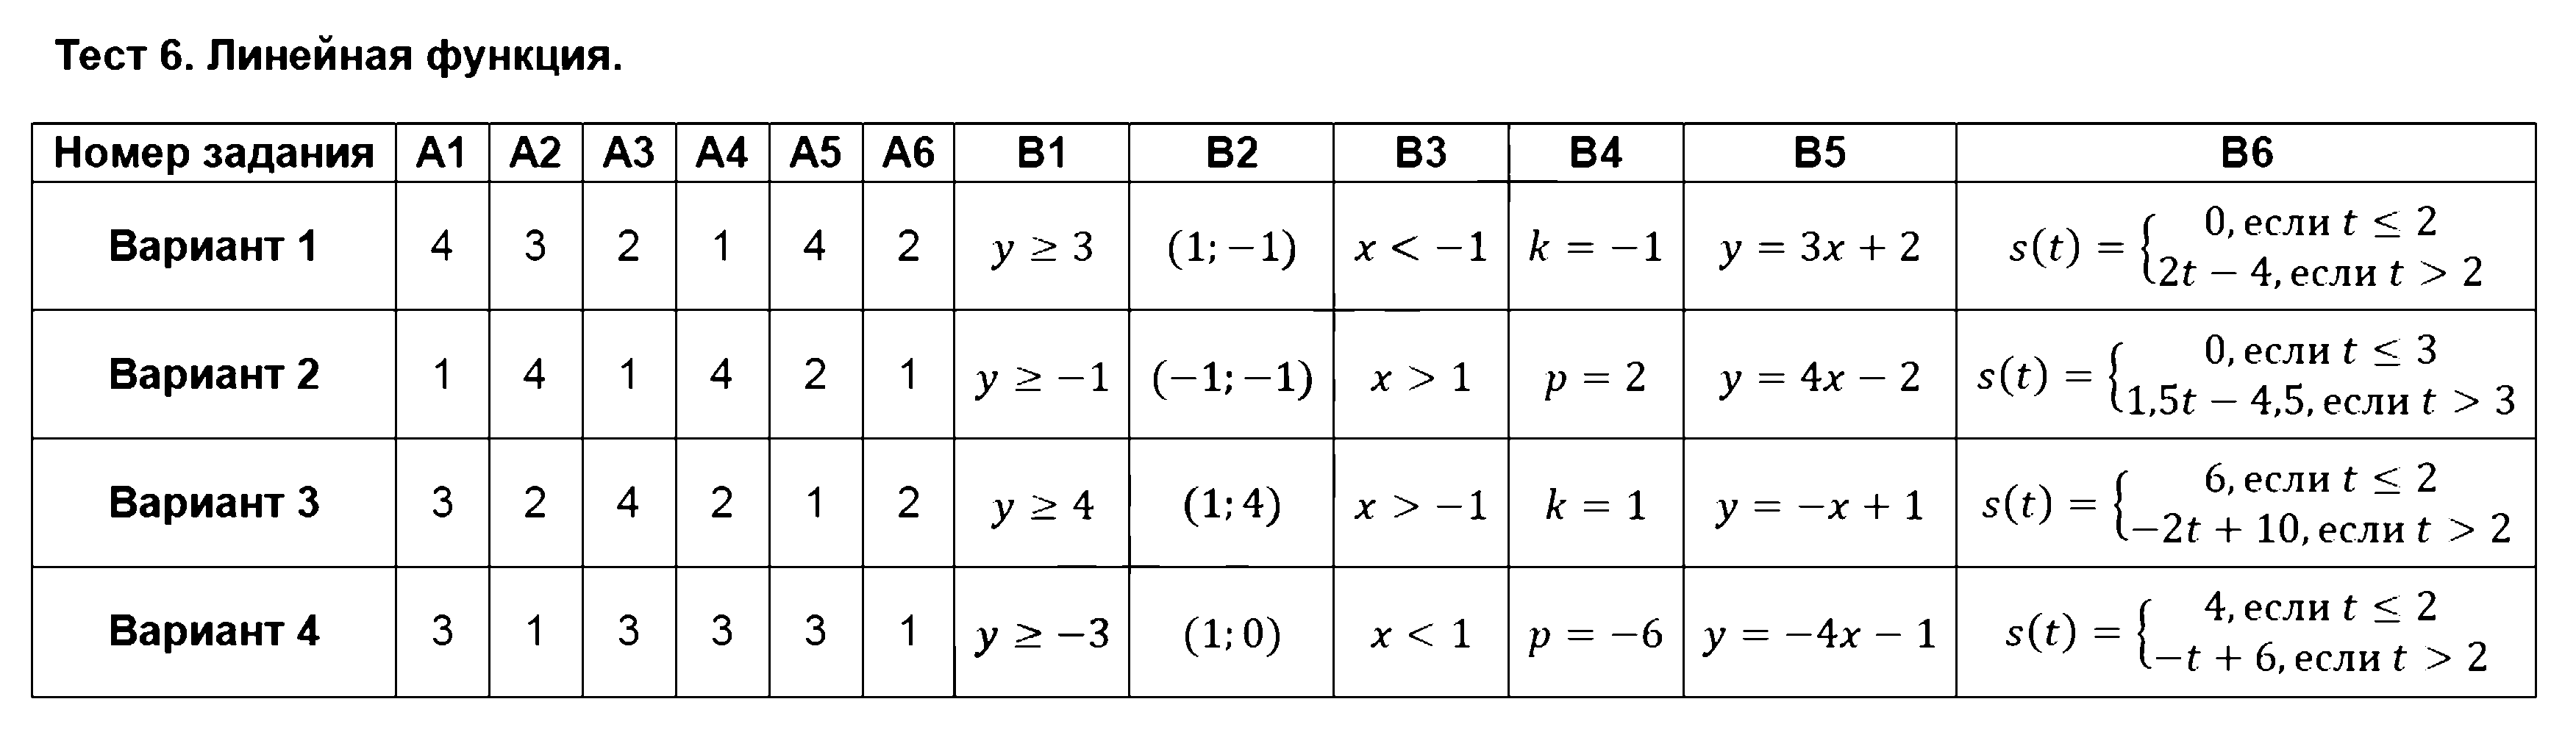 ГДЗ Алгебра 8 класс - Тест 6. Линейная функция